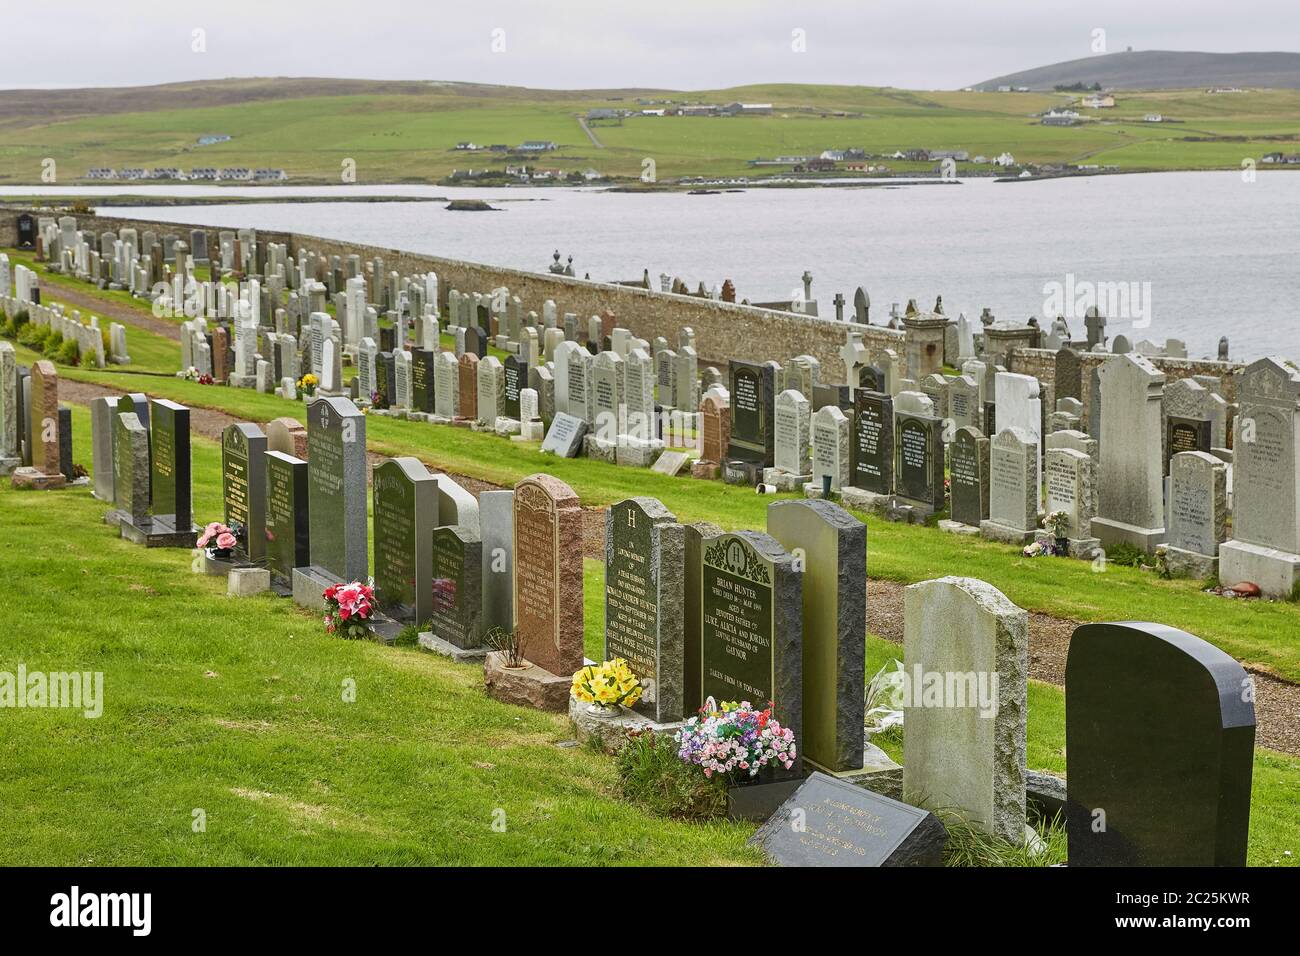 Cimitero su una collina che guarda il Mare del Nord a Lerwick, alle Isole Shetland, Scozia, Regno Unito. Foto Stock